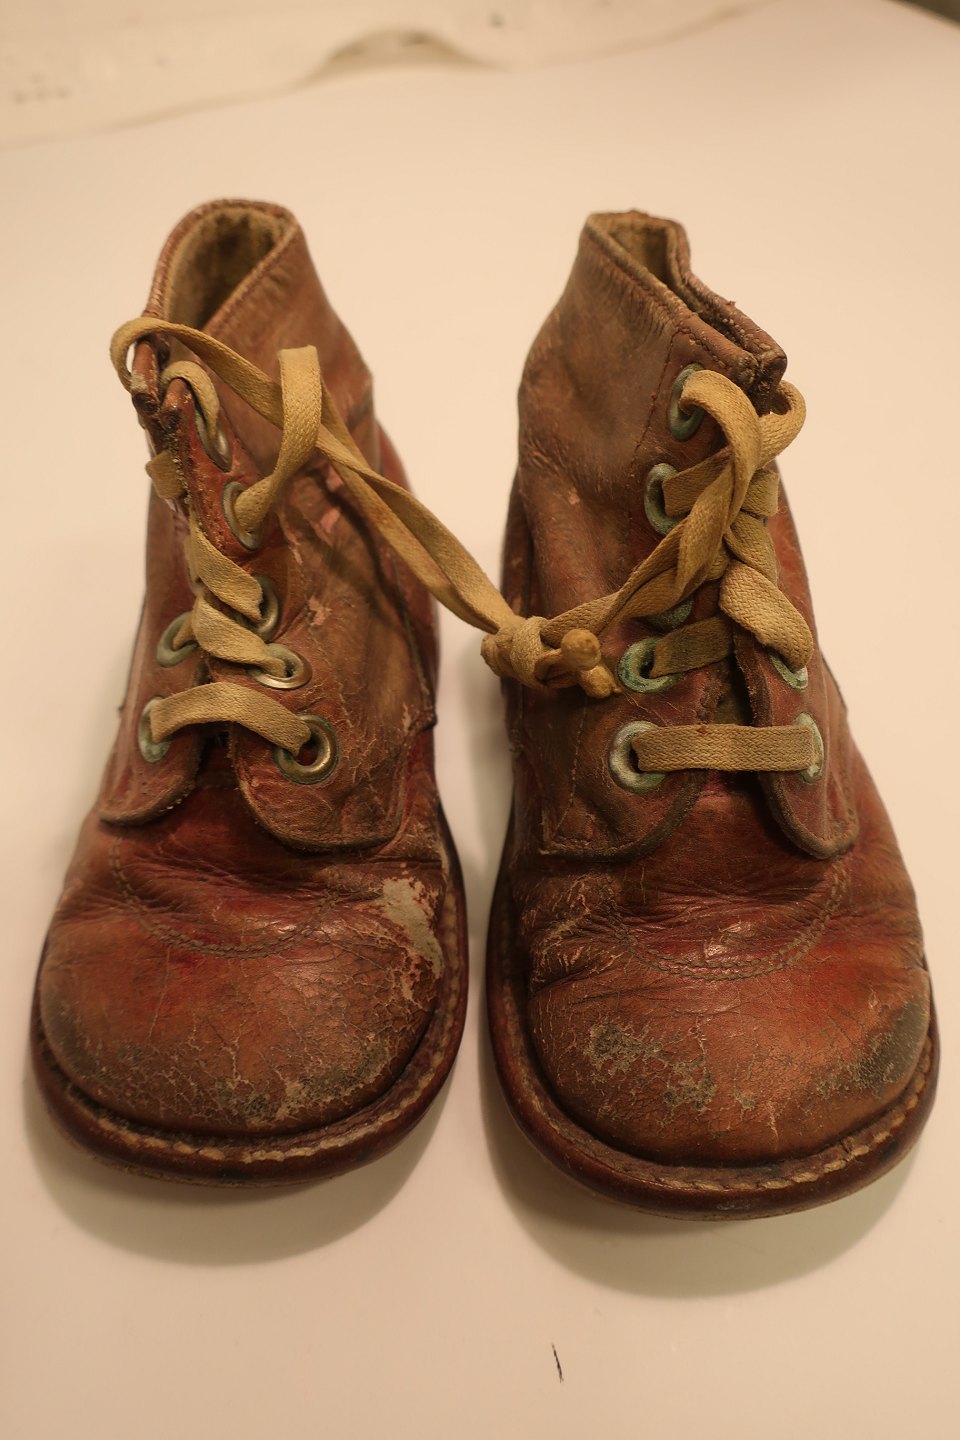 Vibrere Site line ris ViKaLi - Børnesko/-støvler * Gamle læder-børnesko, størrelse 20 * Forsålet,  som skomagere